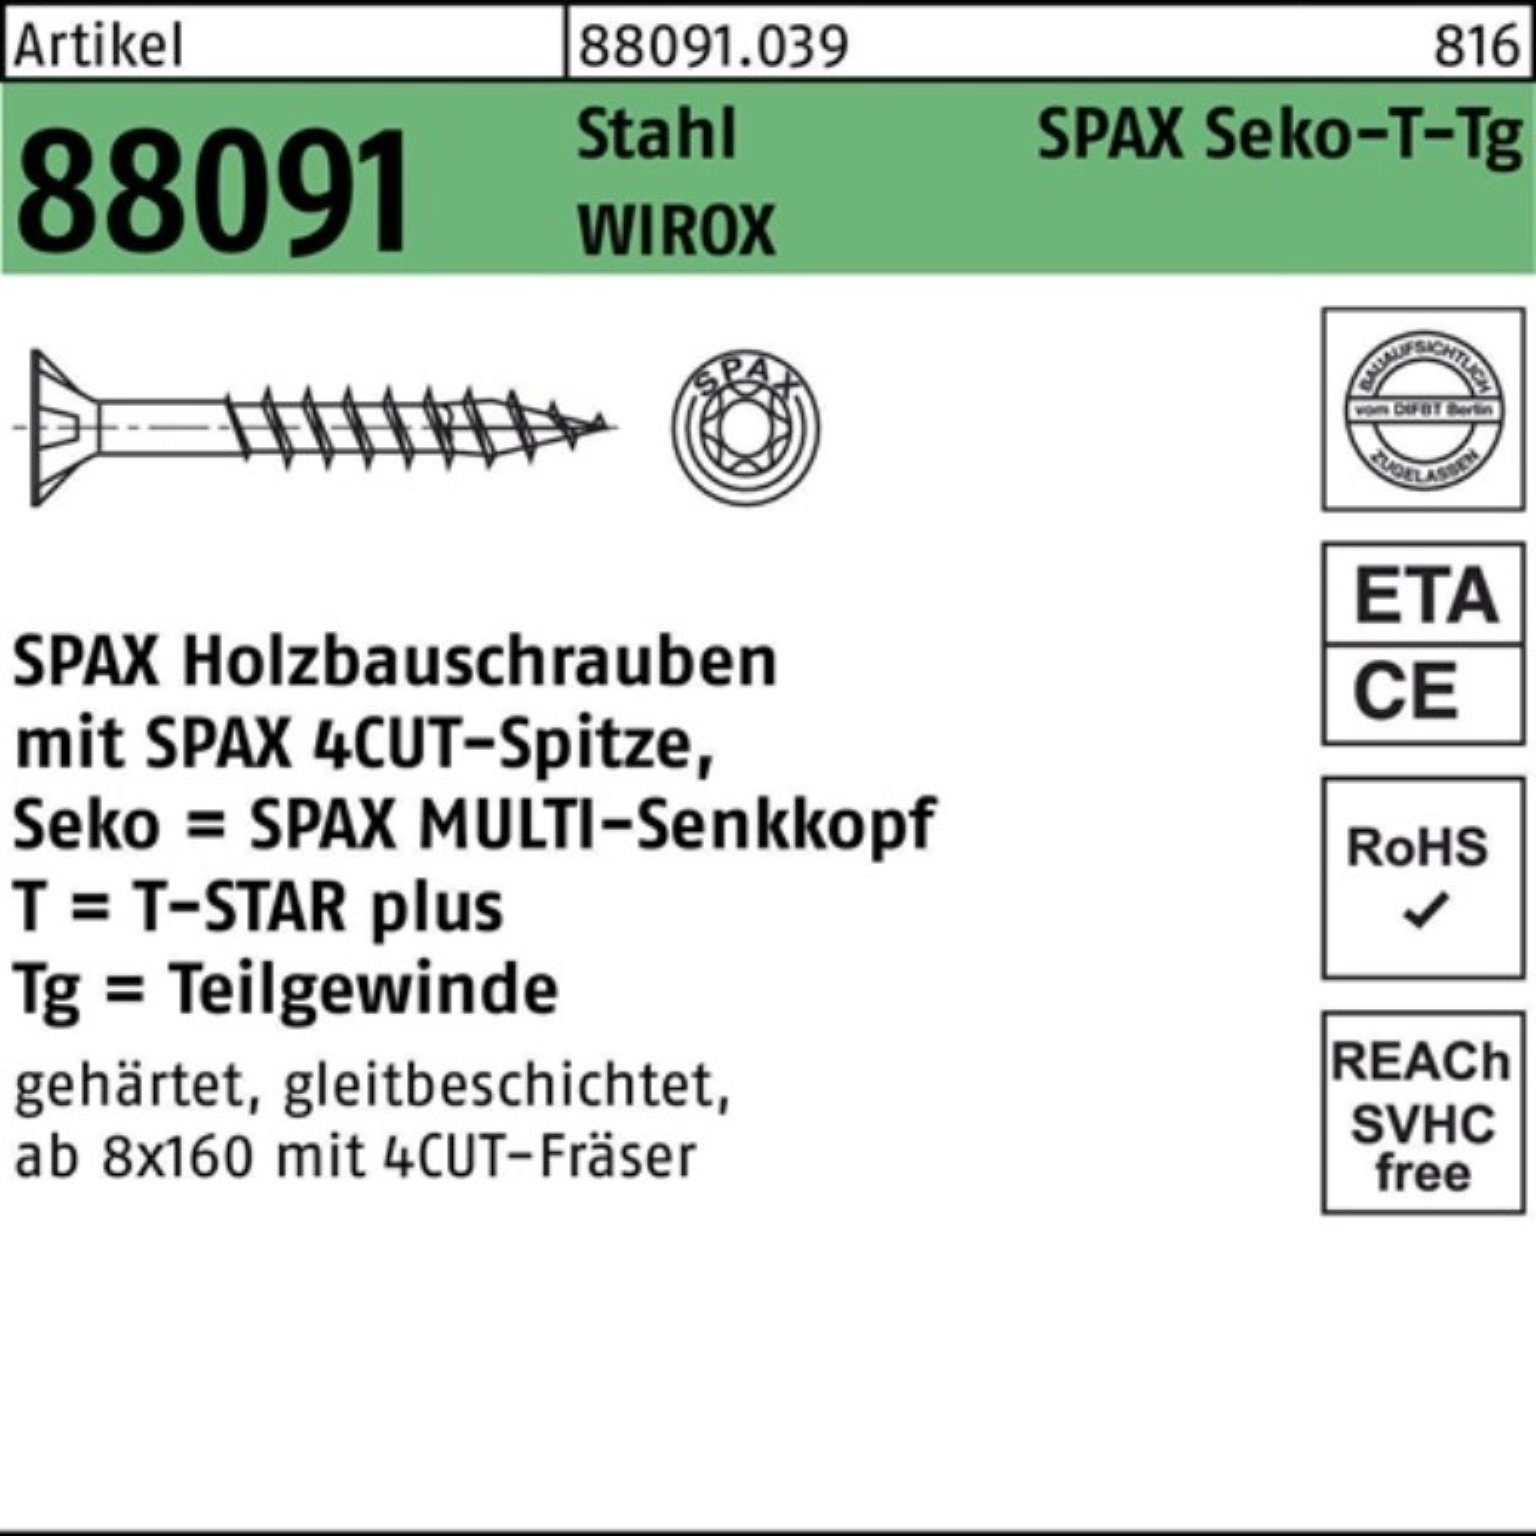 320/80-T50 Schraube 10x SEKO/T-STAR WIROX Stahl Pack SPAX R TG 100er 88091 Schraube